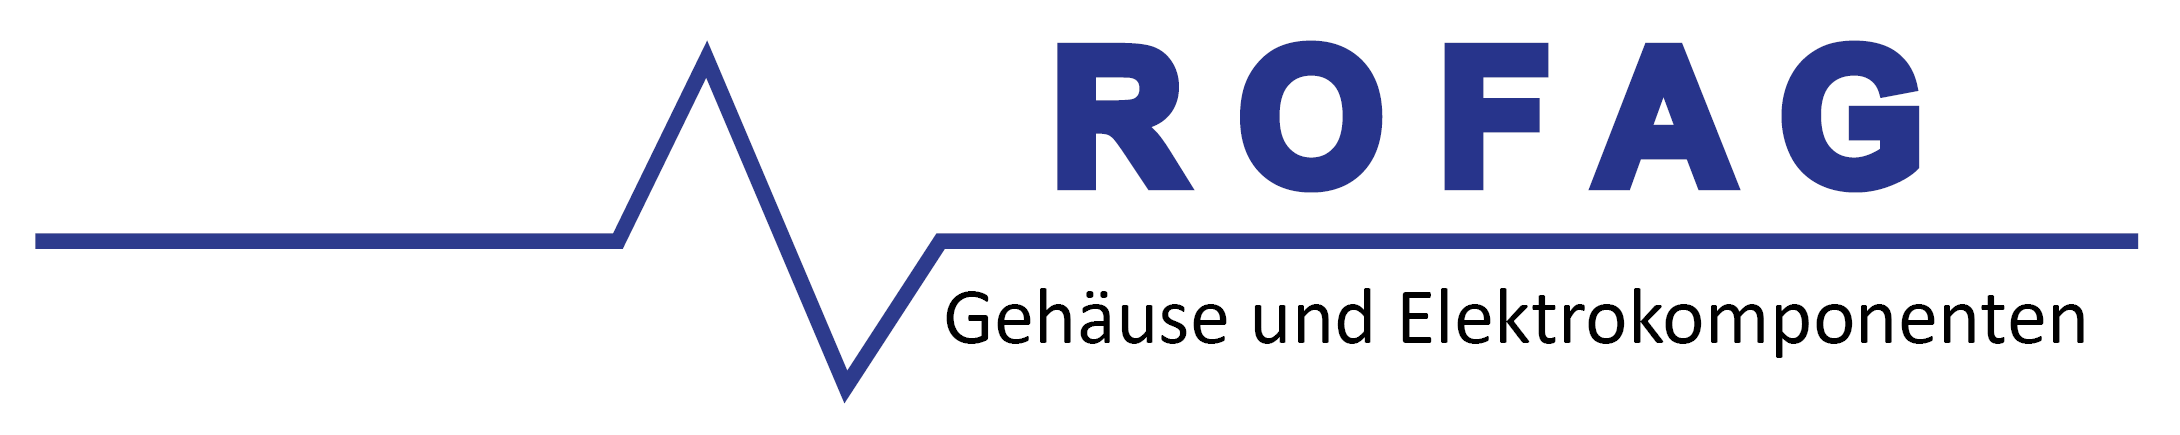 Rofag_Logo_2021_300dpi